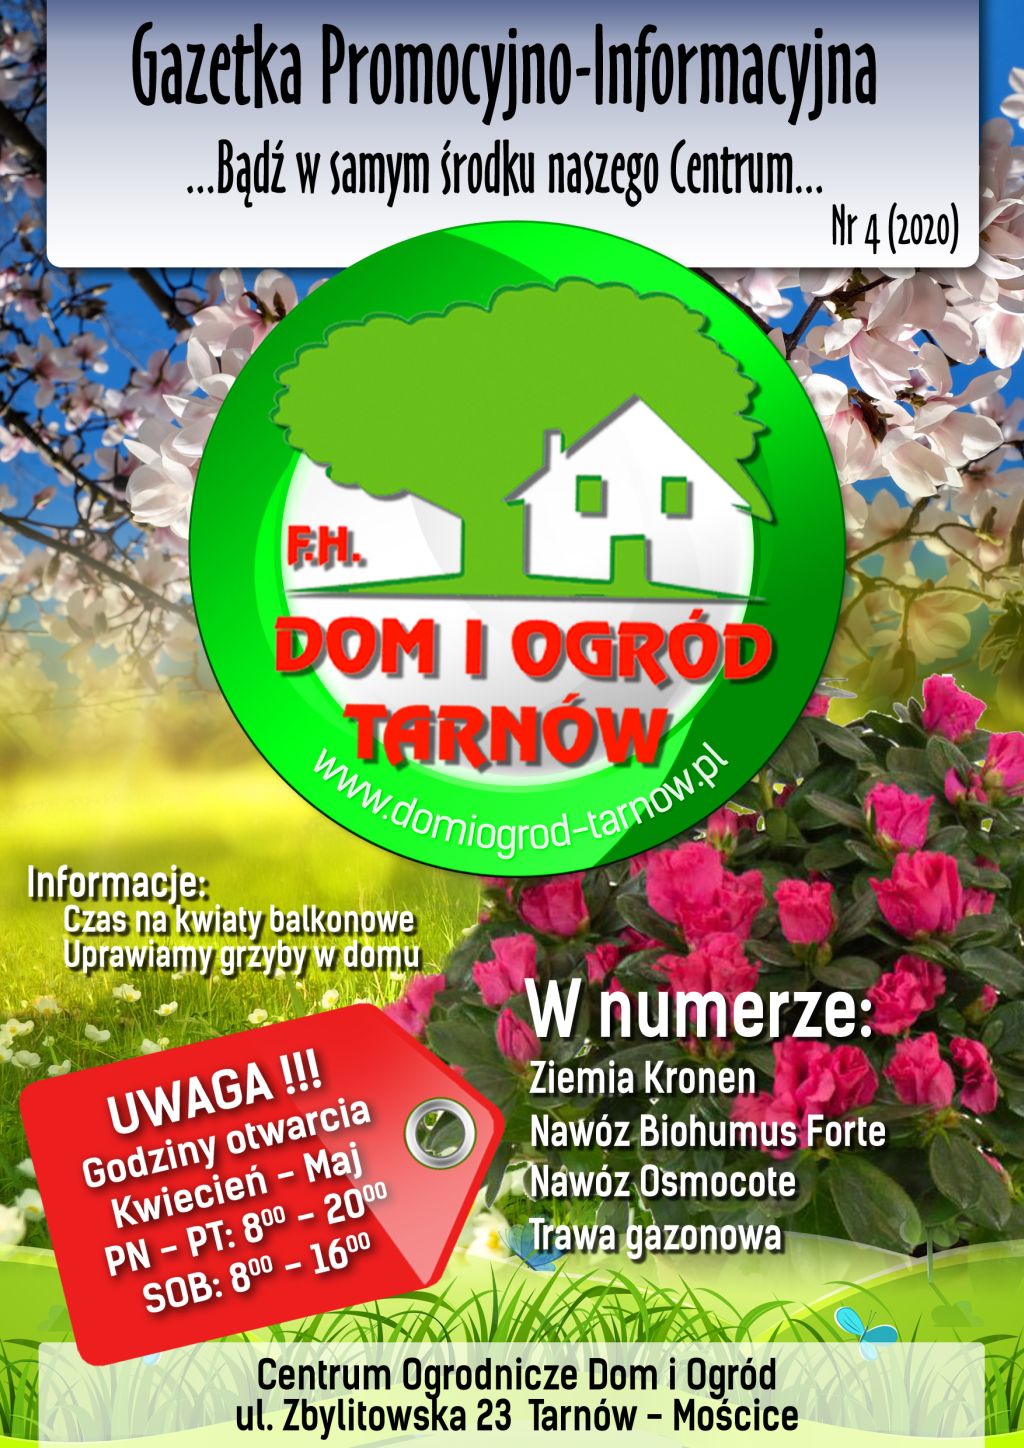 Gazetka Promocyjno-Informacyjna - 04/2020